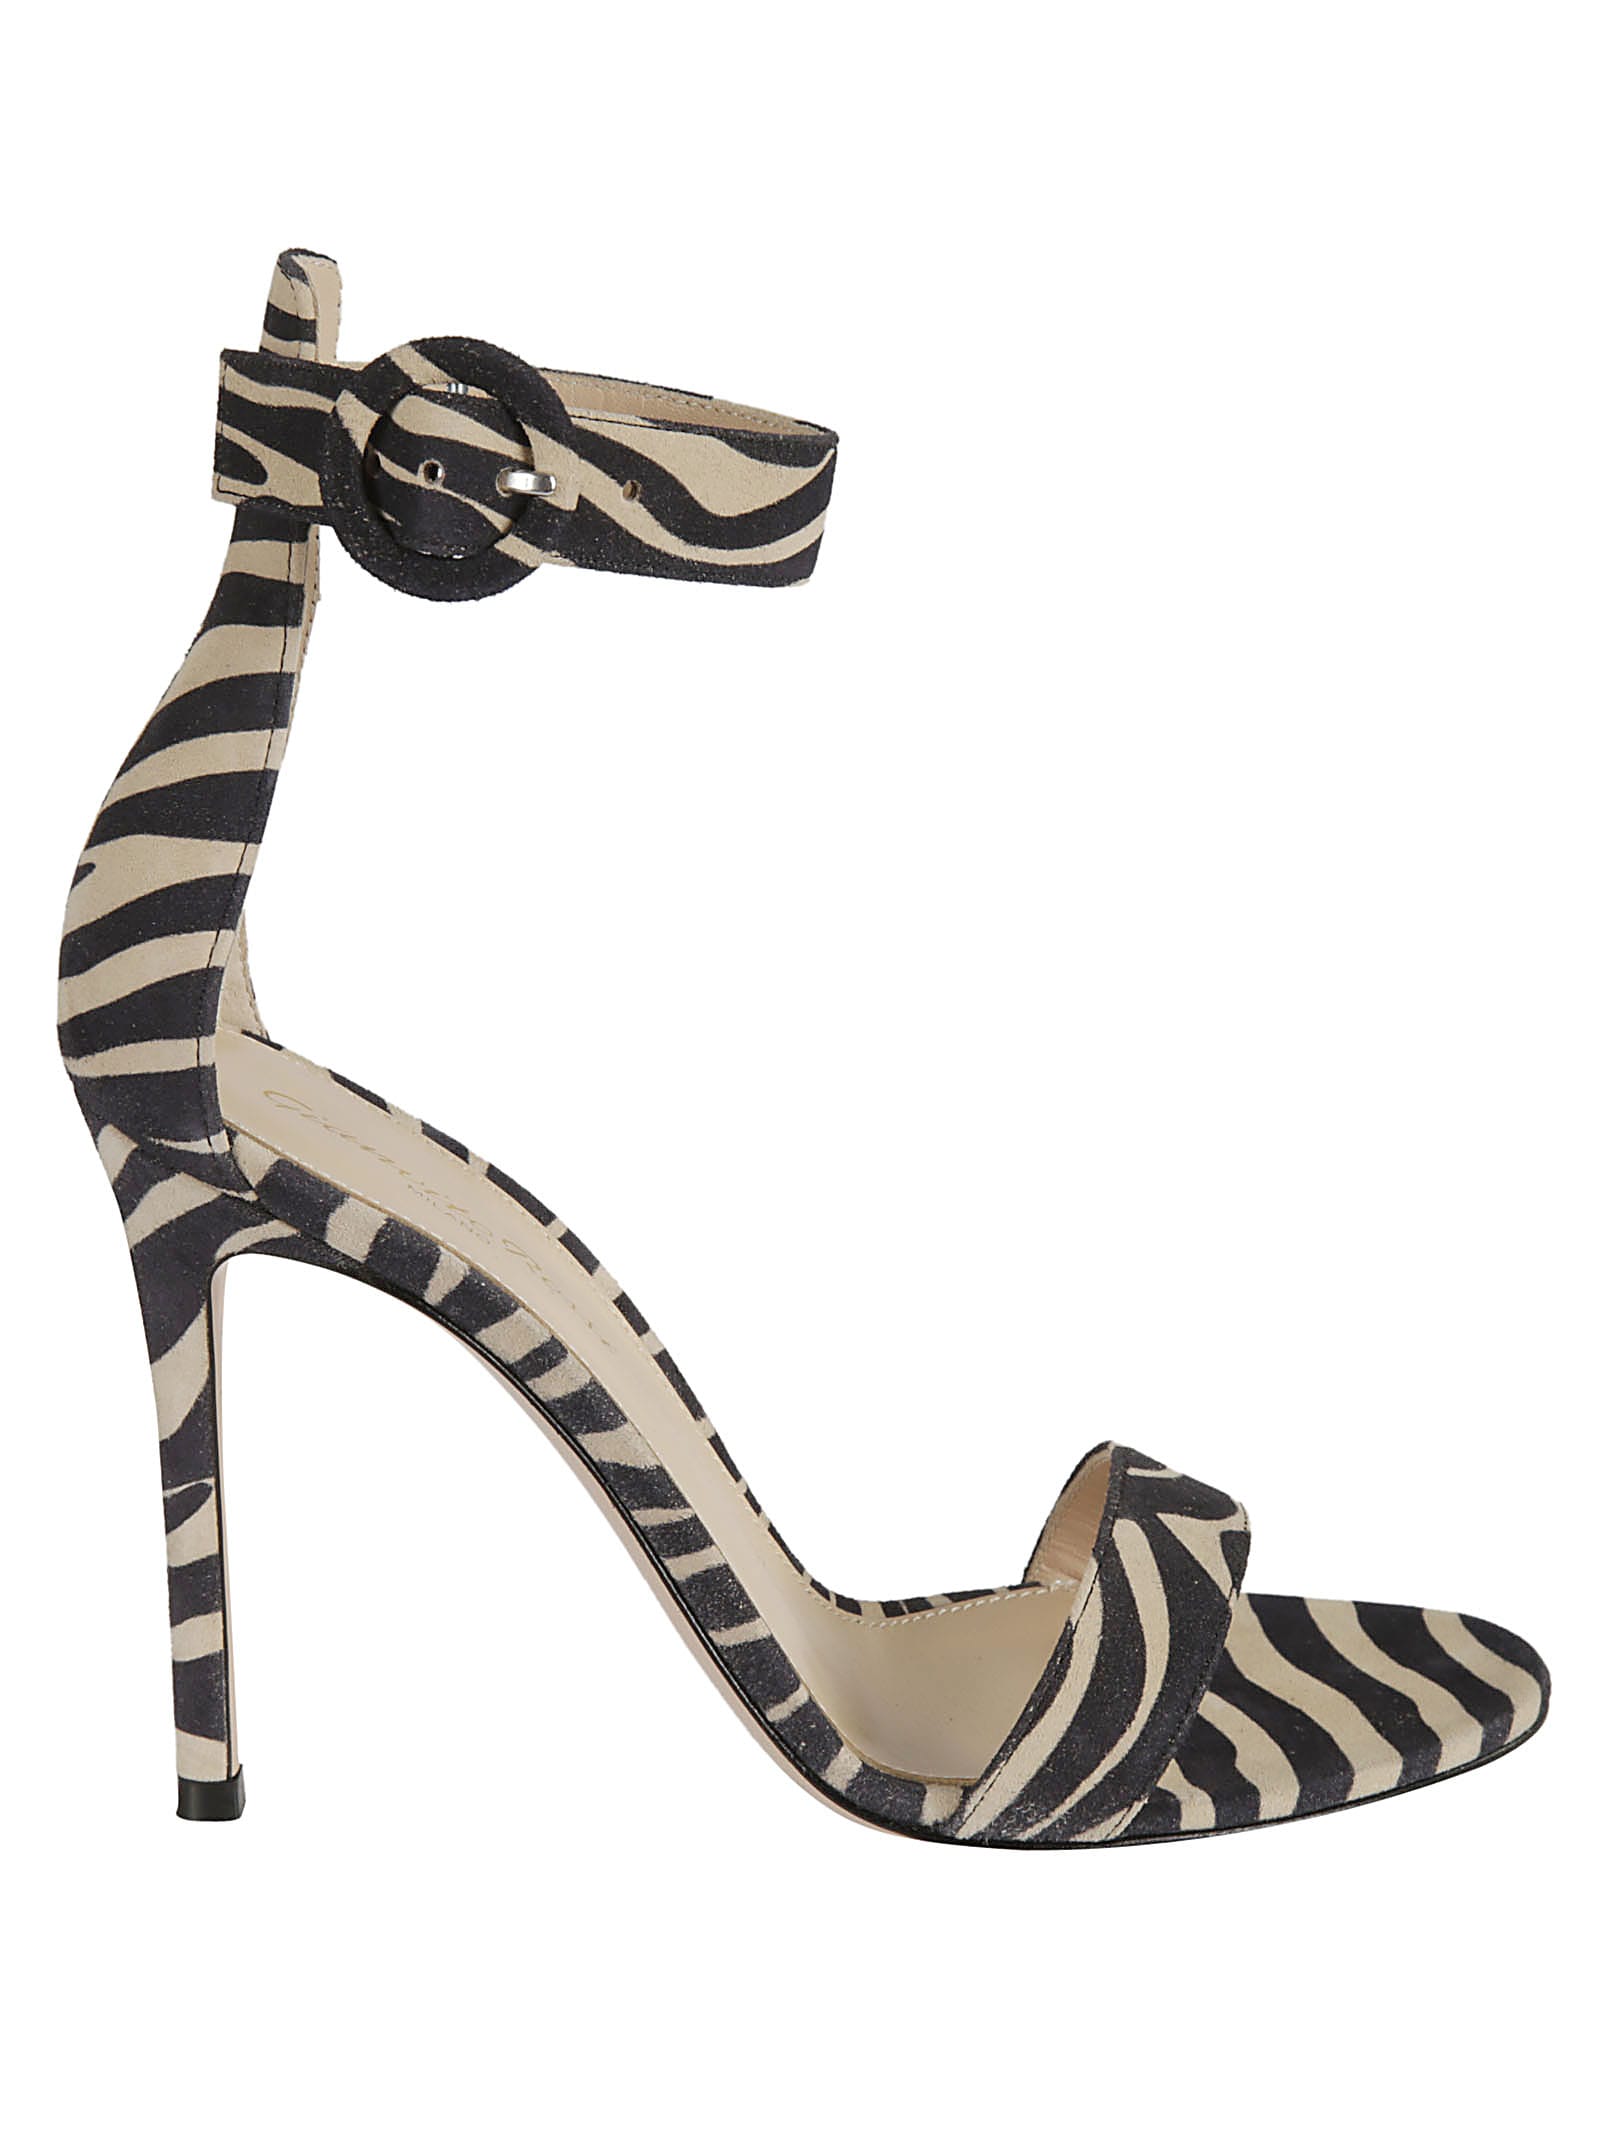 Gianvito Rossi Zebra Print Side Buckled Sandals In Mousse/zebra